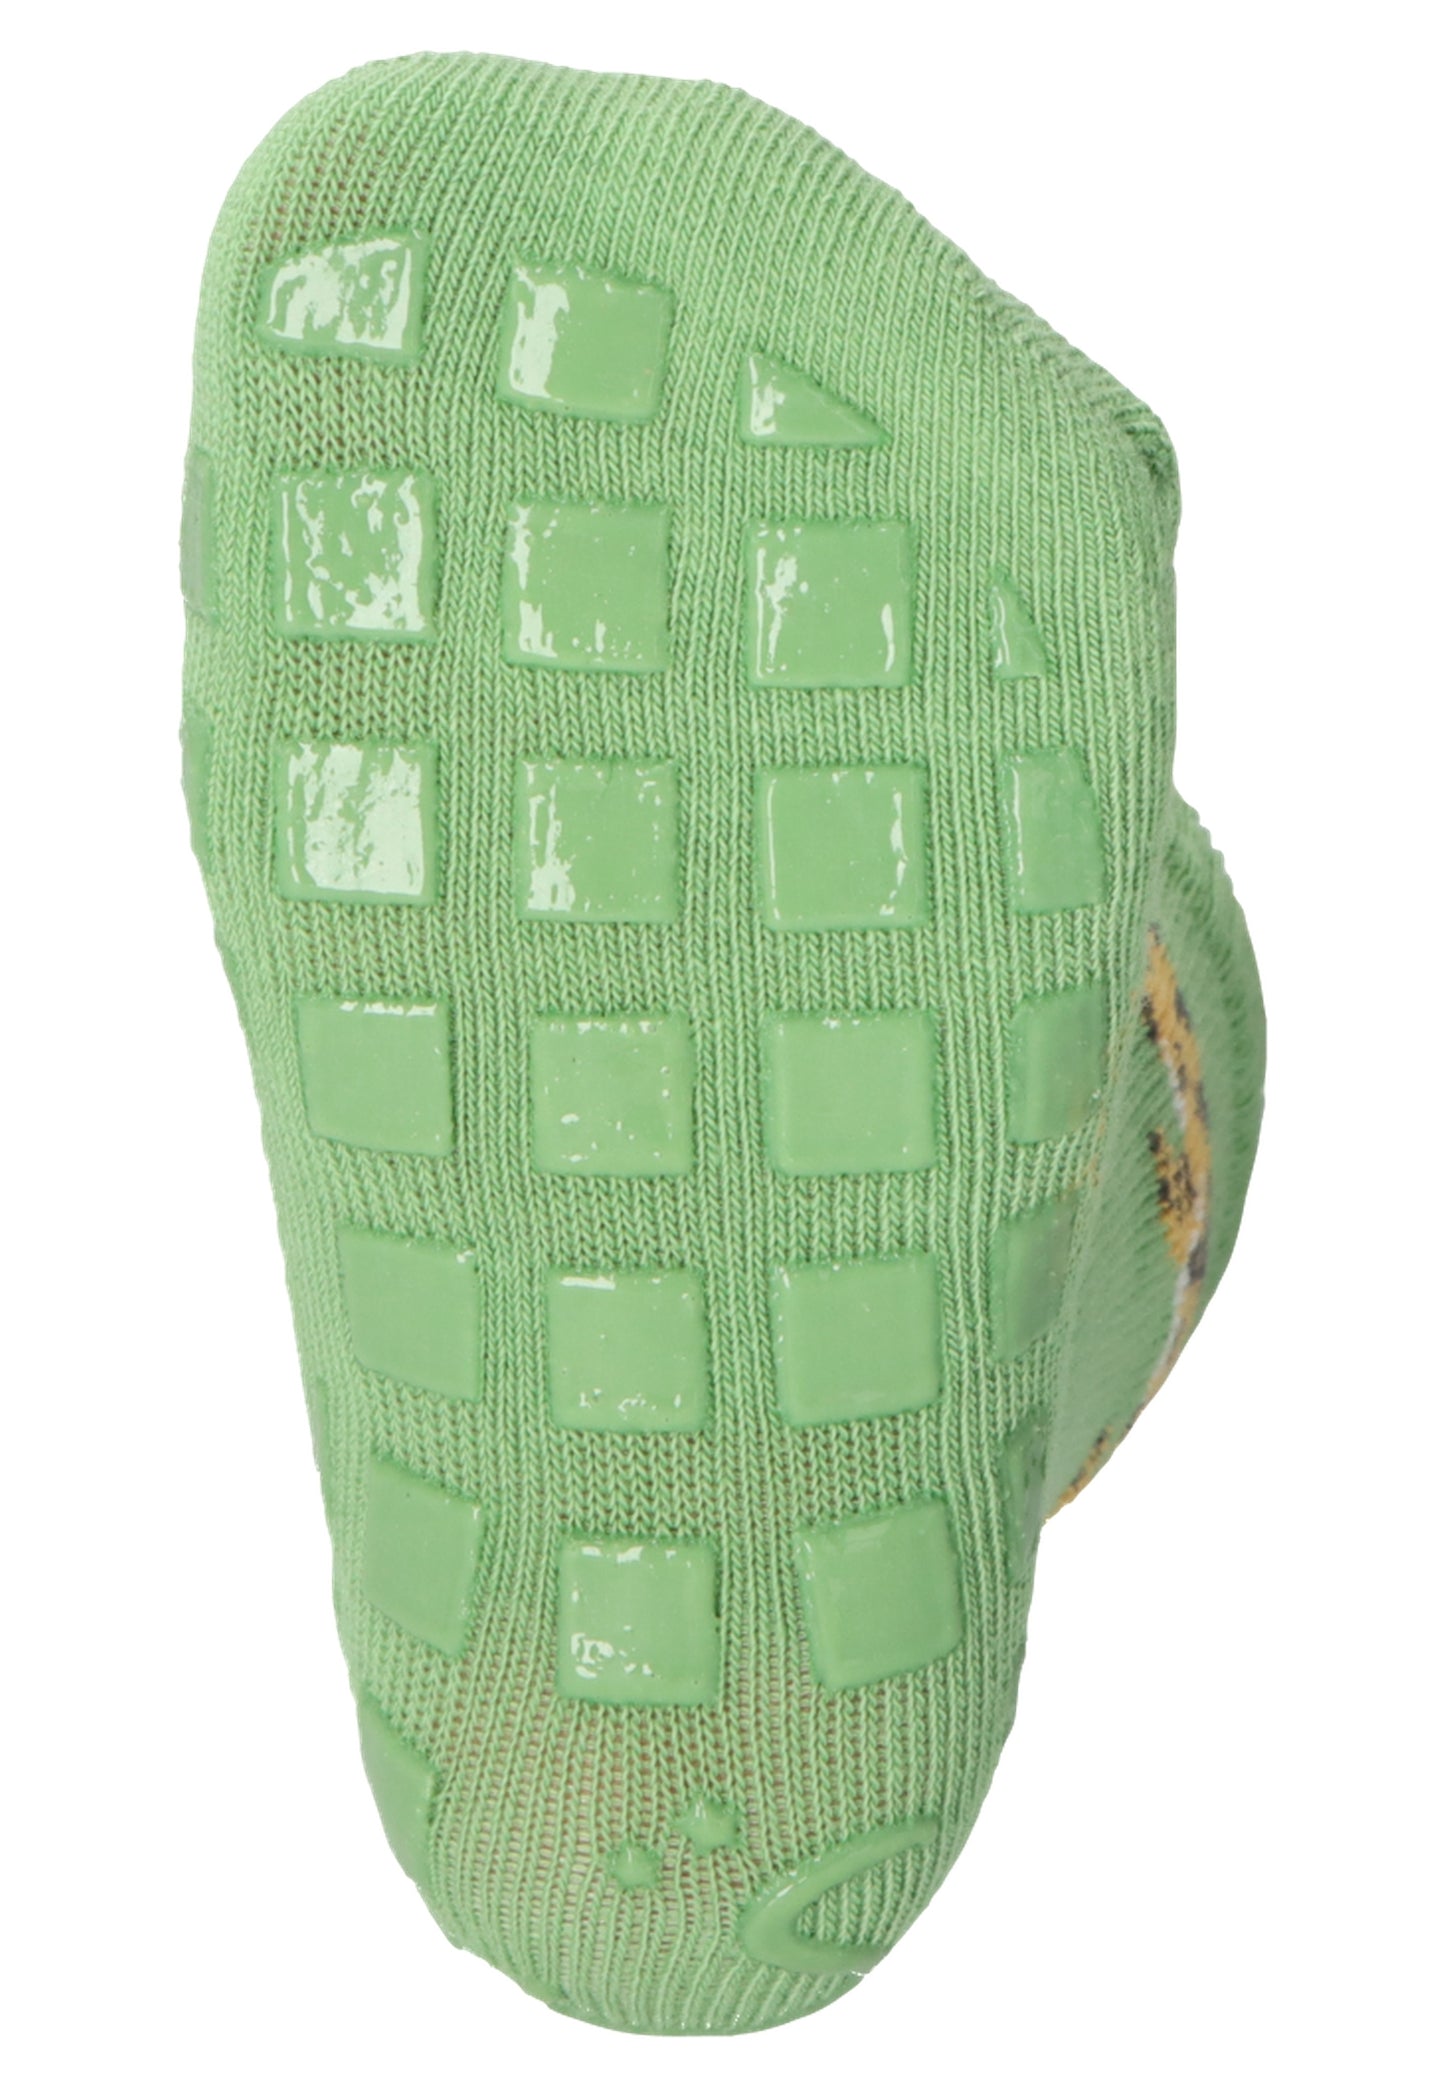 ABS-Socken DP Krokodil/Tiger